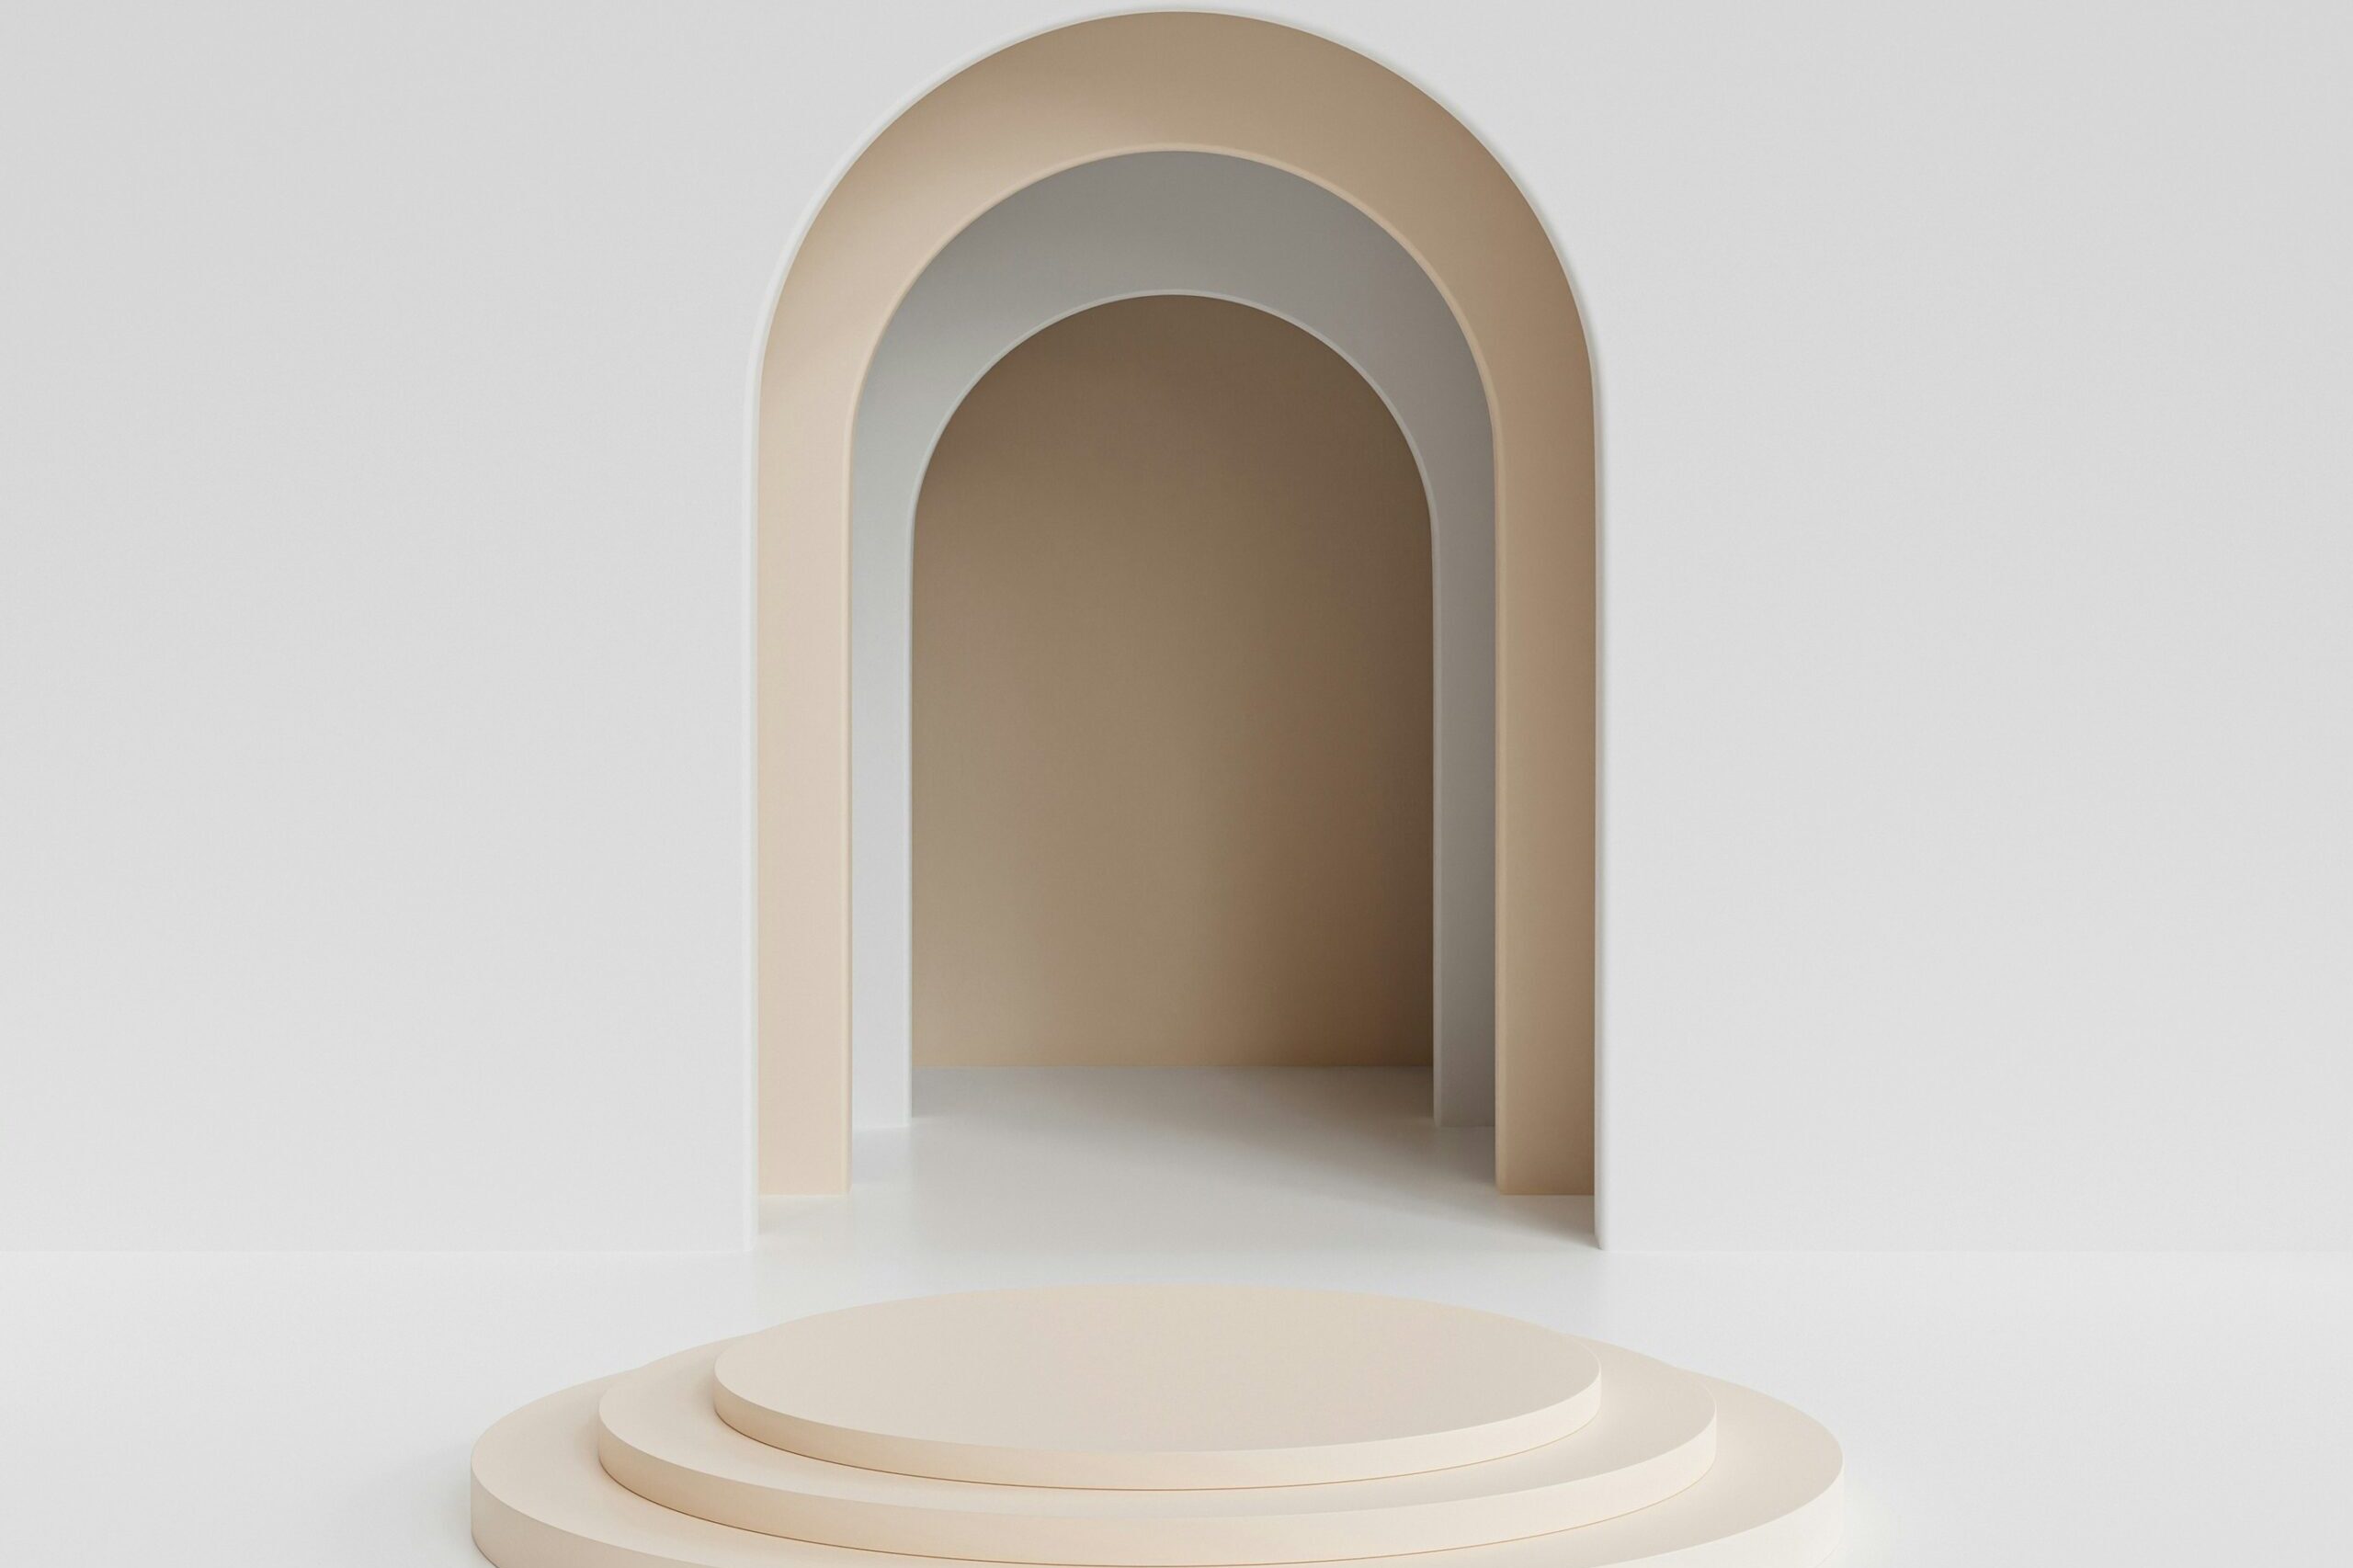 abstrakti valkoinen tunneli, jonka loppu on määrittelemätön.